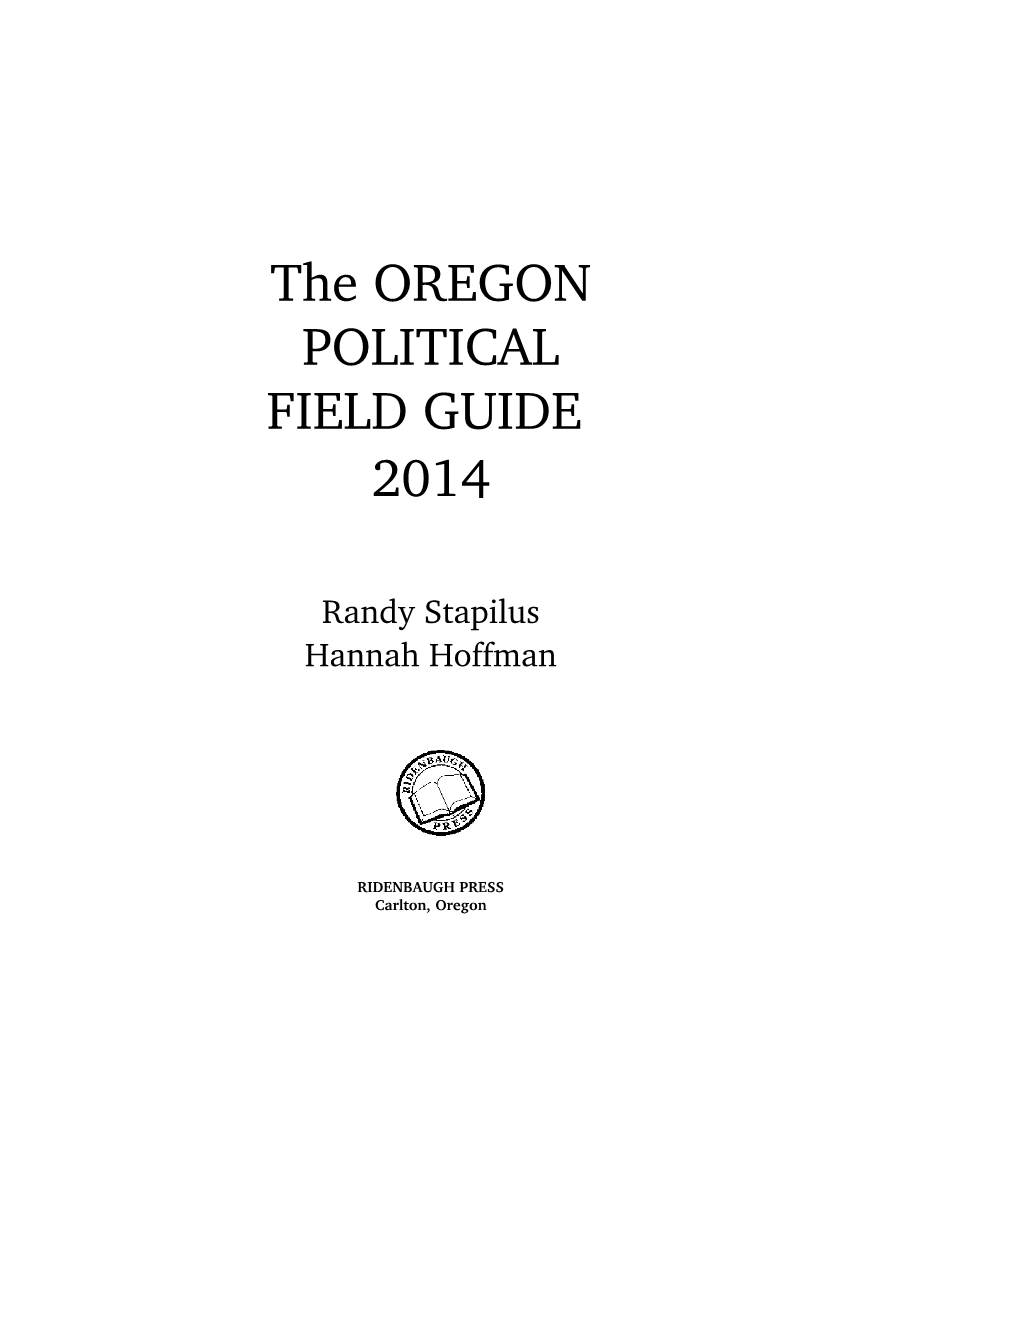 The OREGON POLITICAL FIELD GUIDE 2014